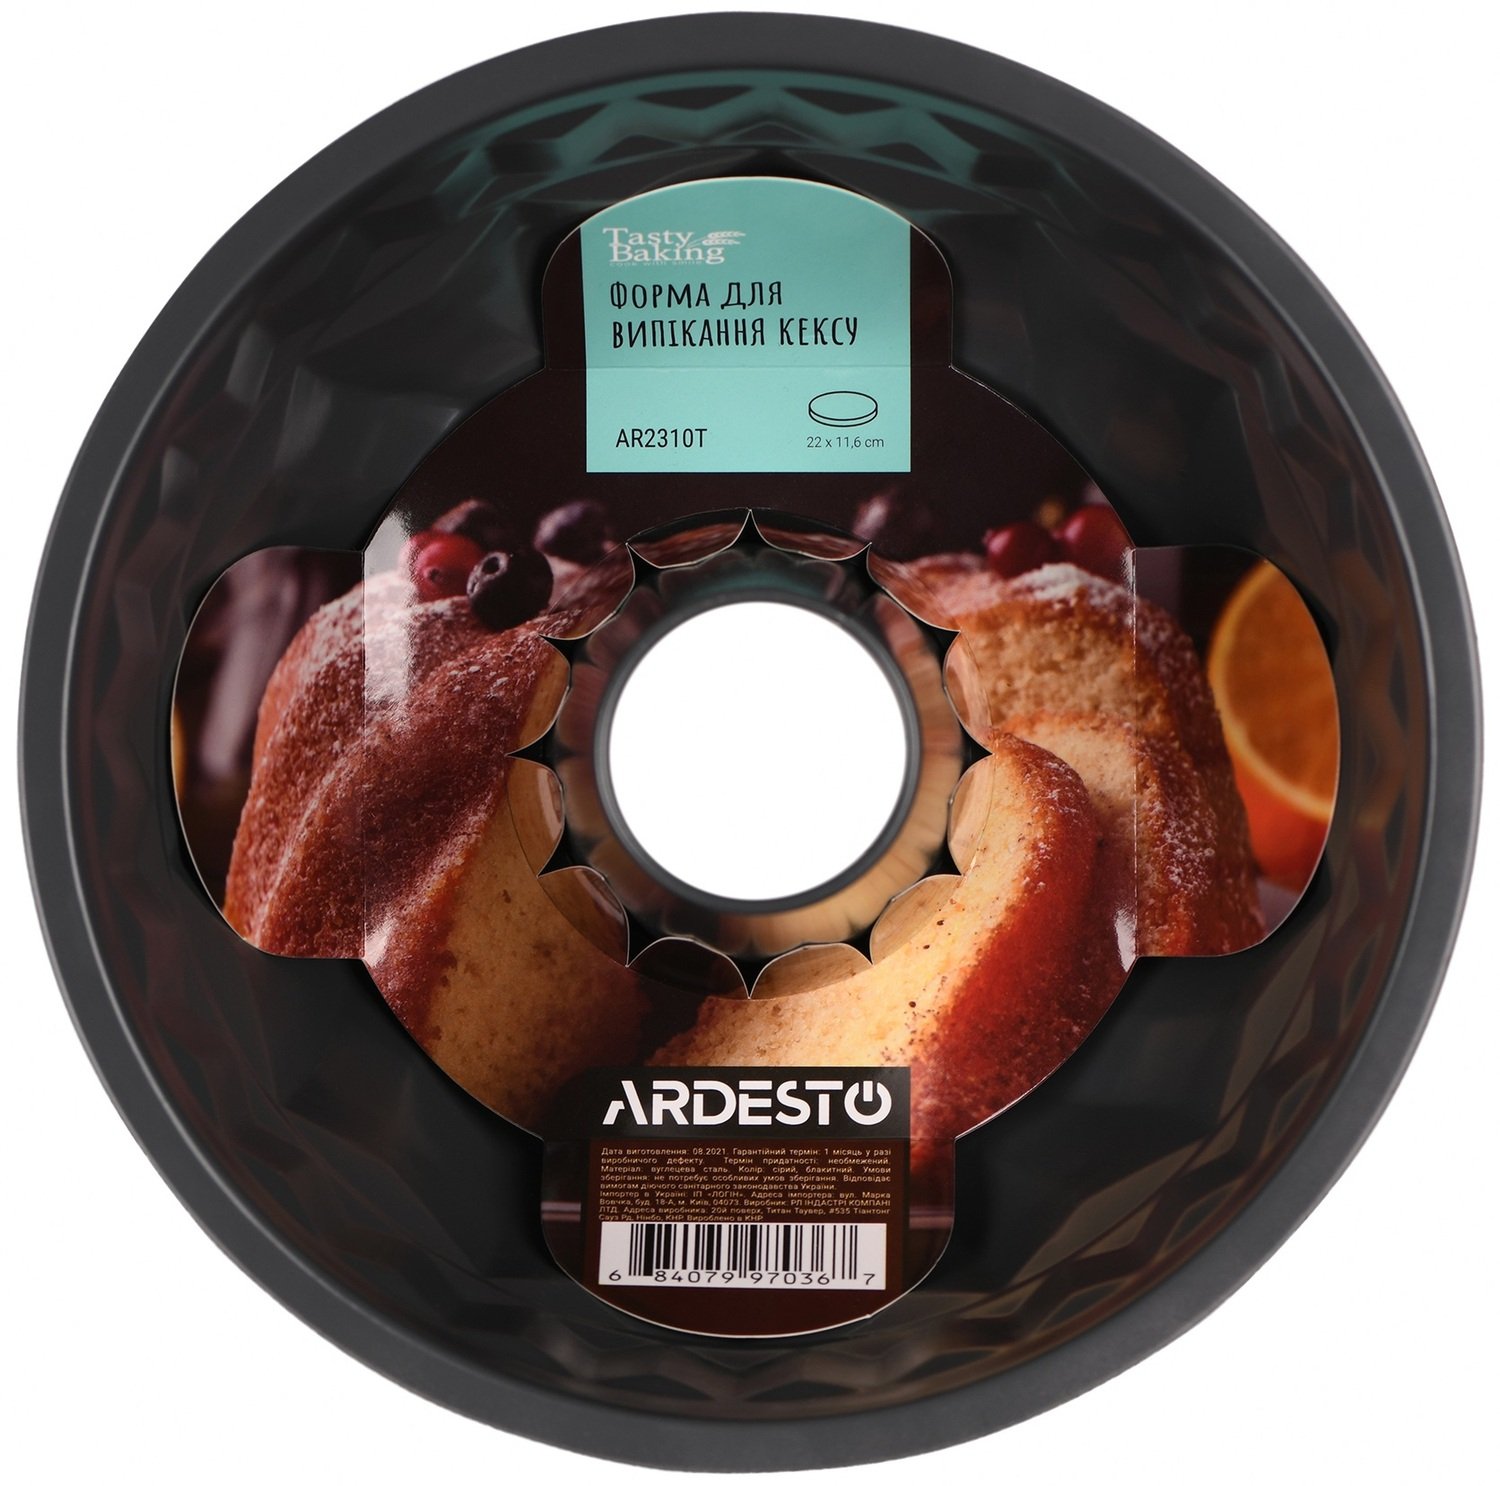 Форма для выпечки кекса Ardesto Tasty baking, круглая, 22x11.6см (AR2310T) фото 